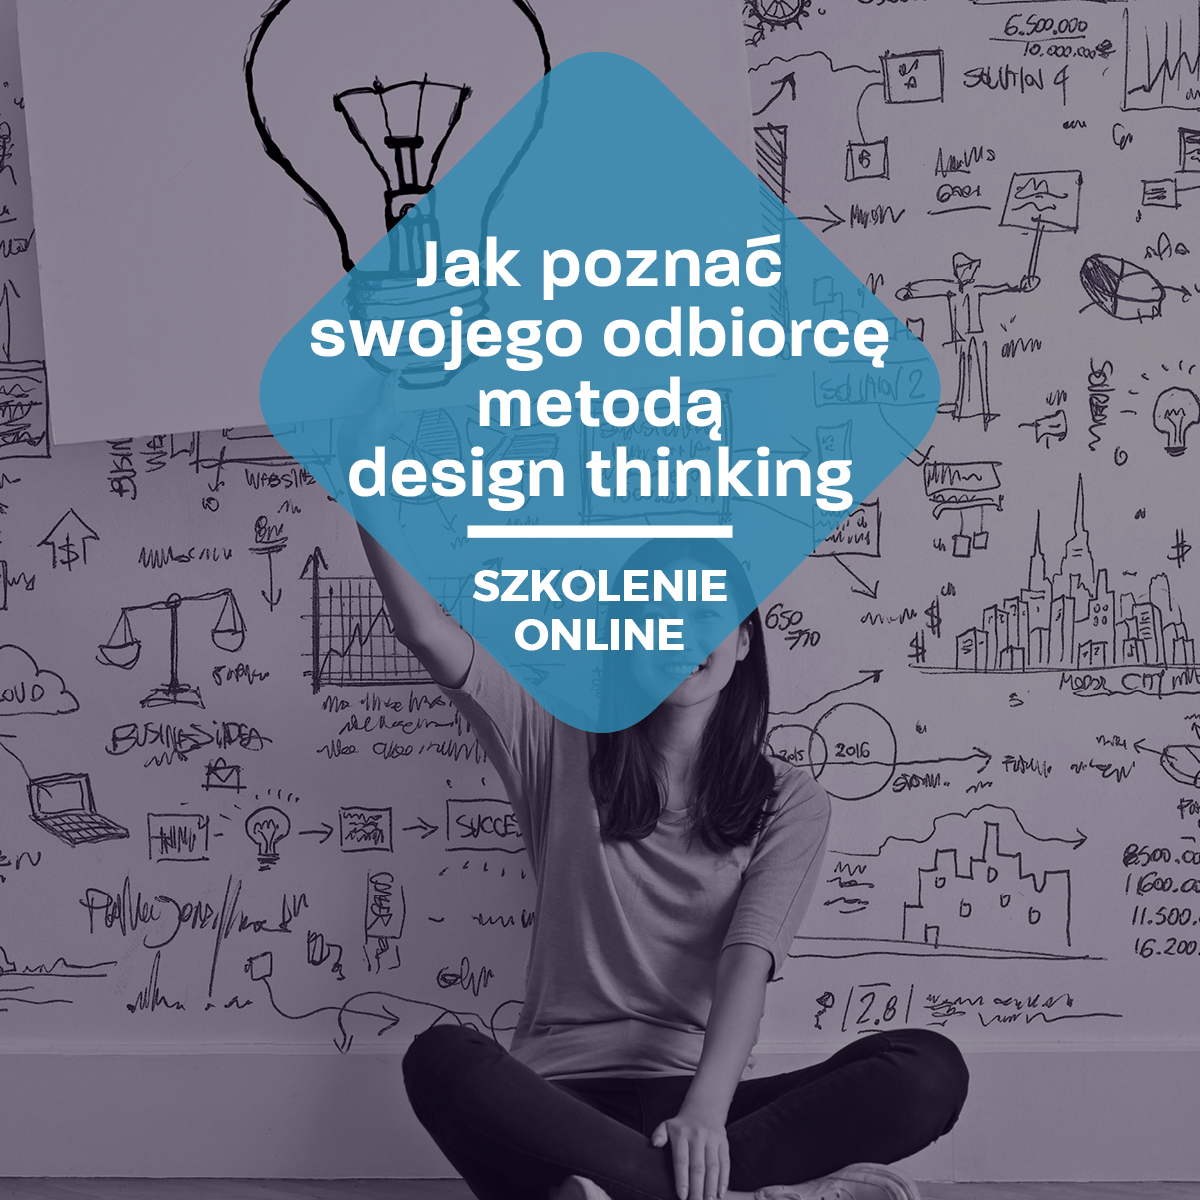 Course Image Jak poznać swojego odbiorcę metodą design thinking?